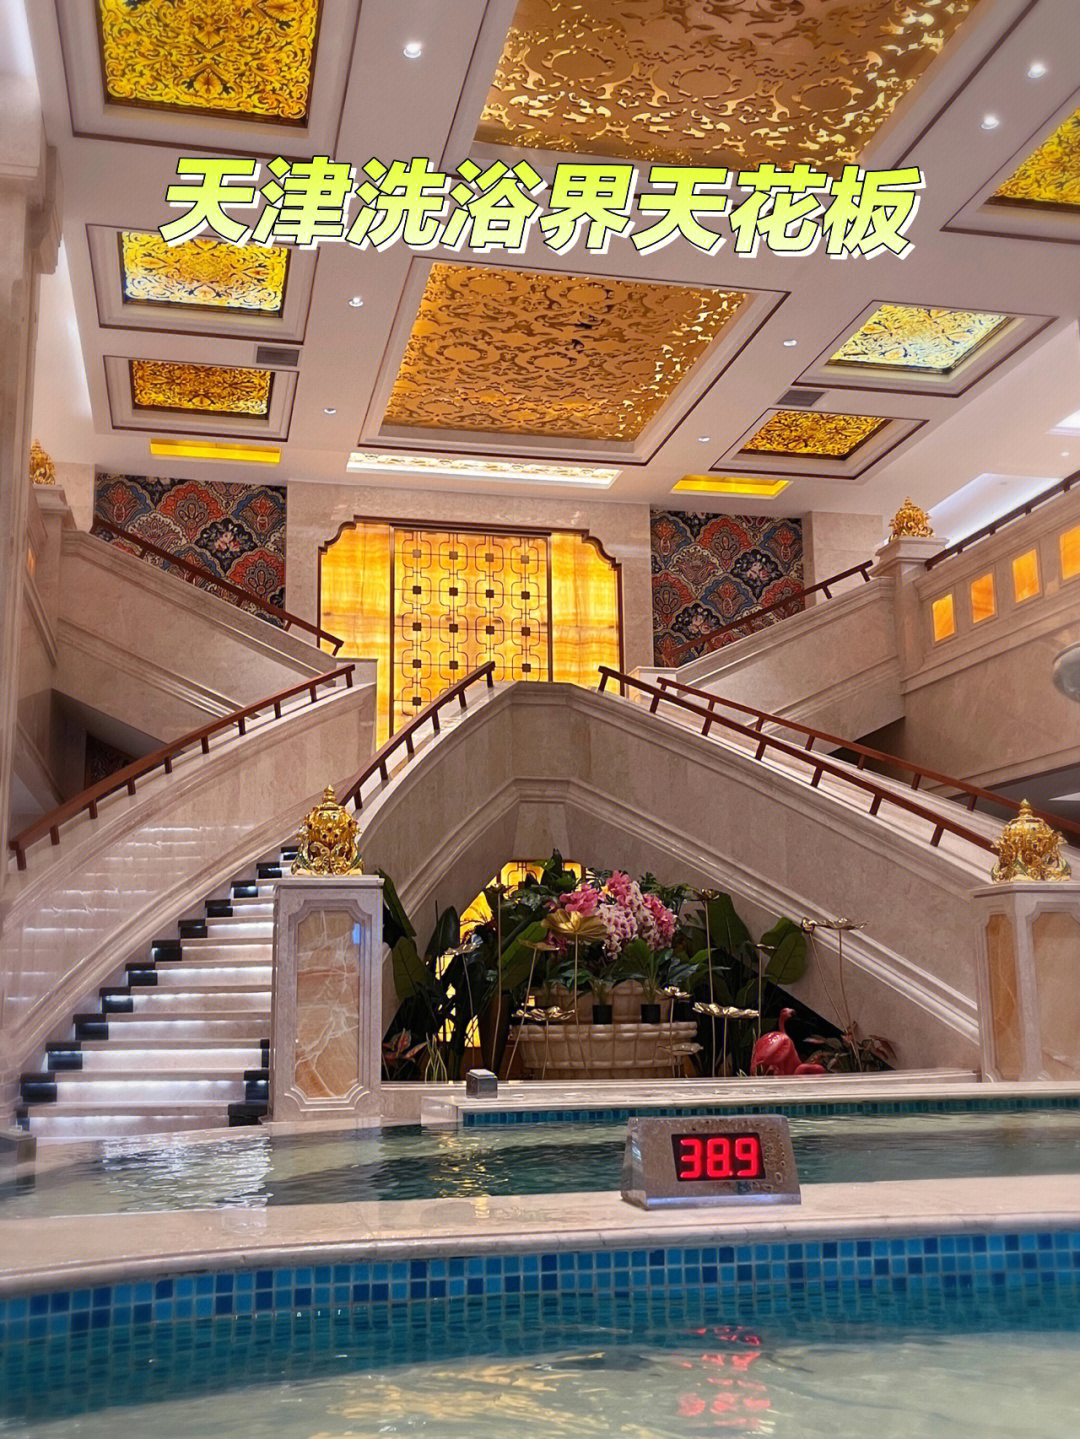 天津振兴洗浴图片